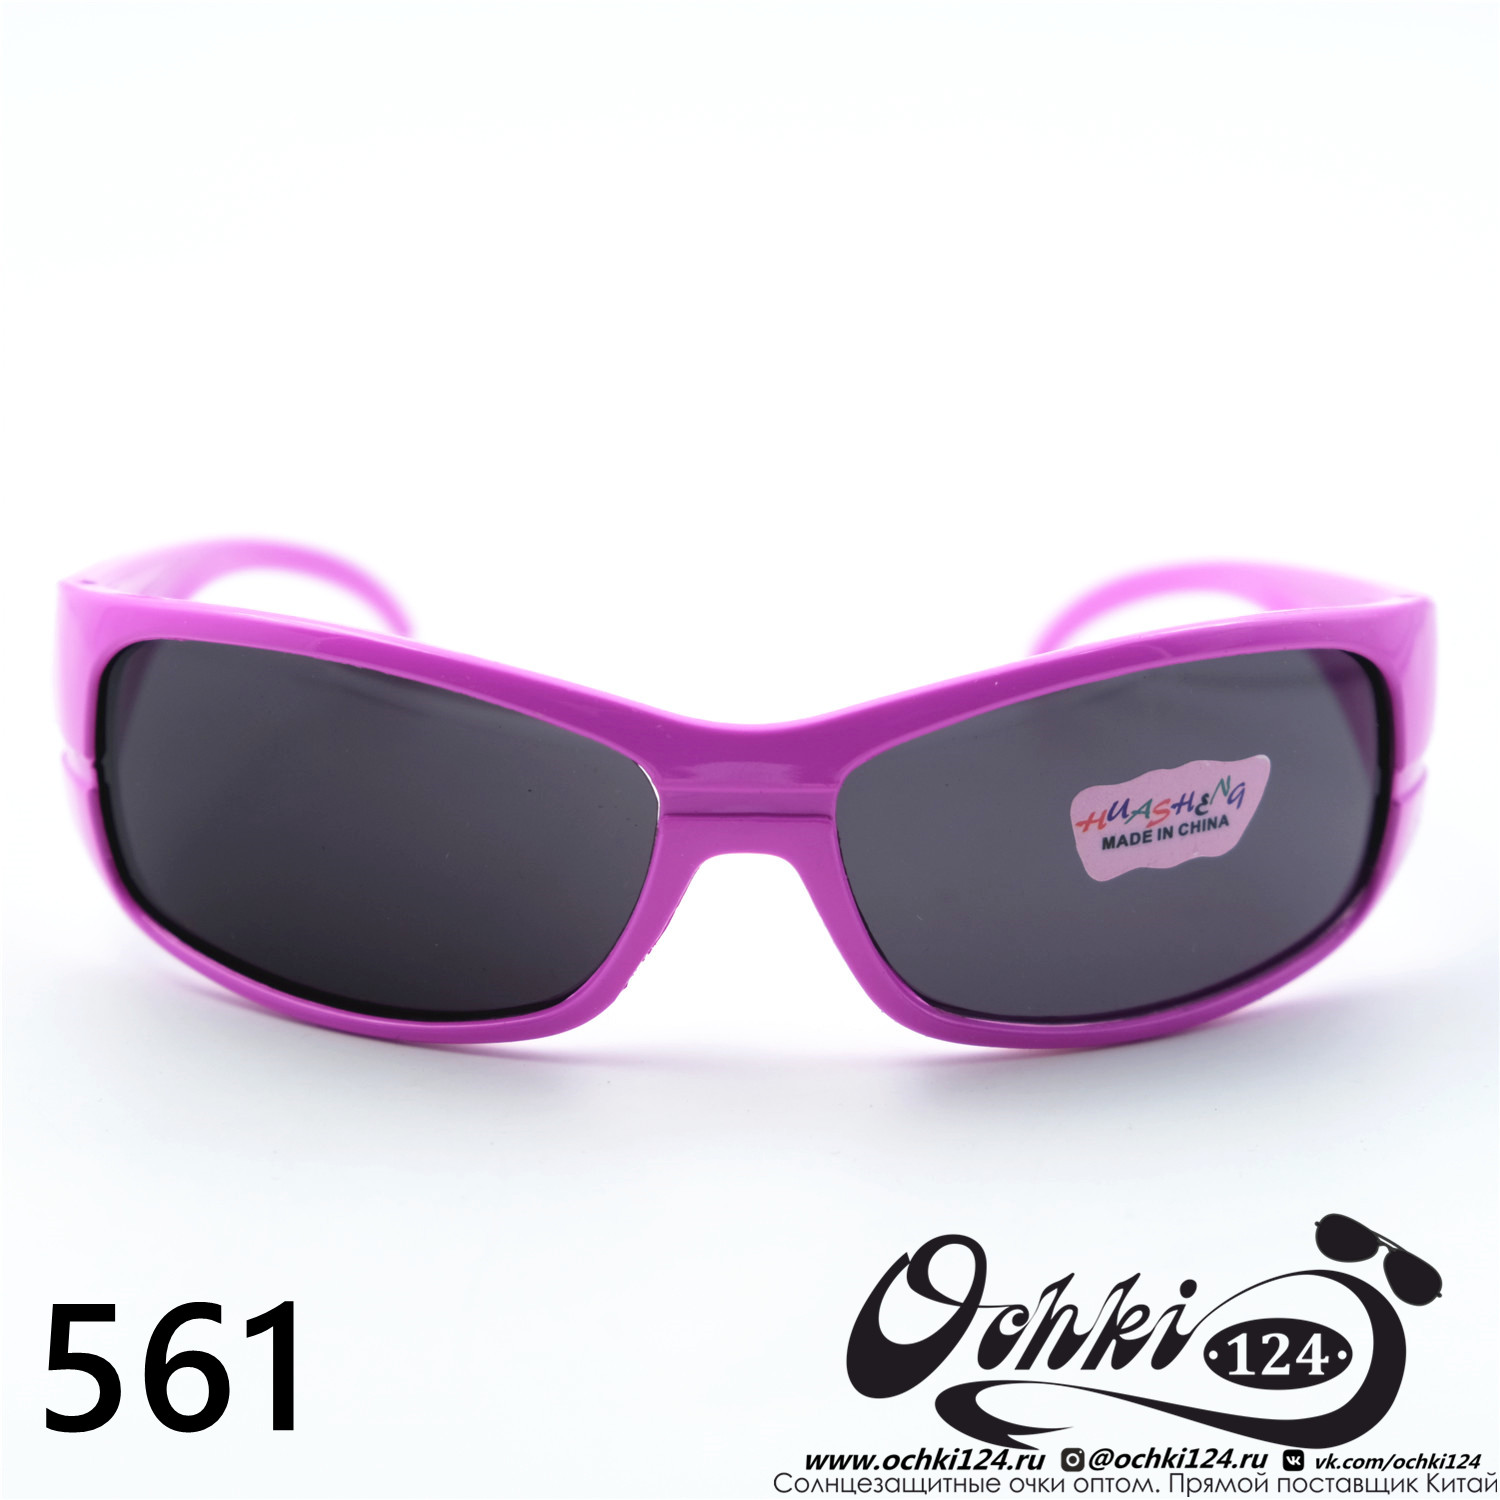  Солнцезащитные очки картинка 2023 Детские Узкие и длинные  561-C2 